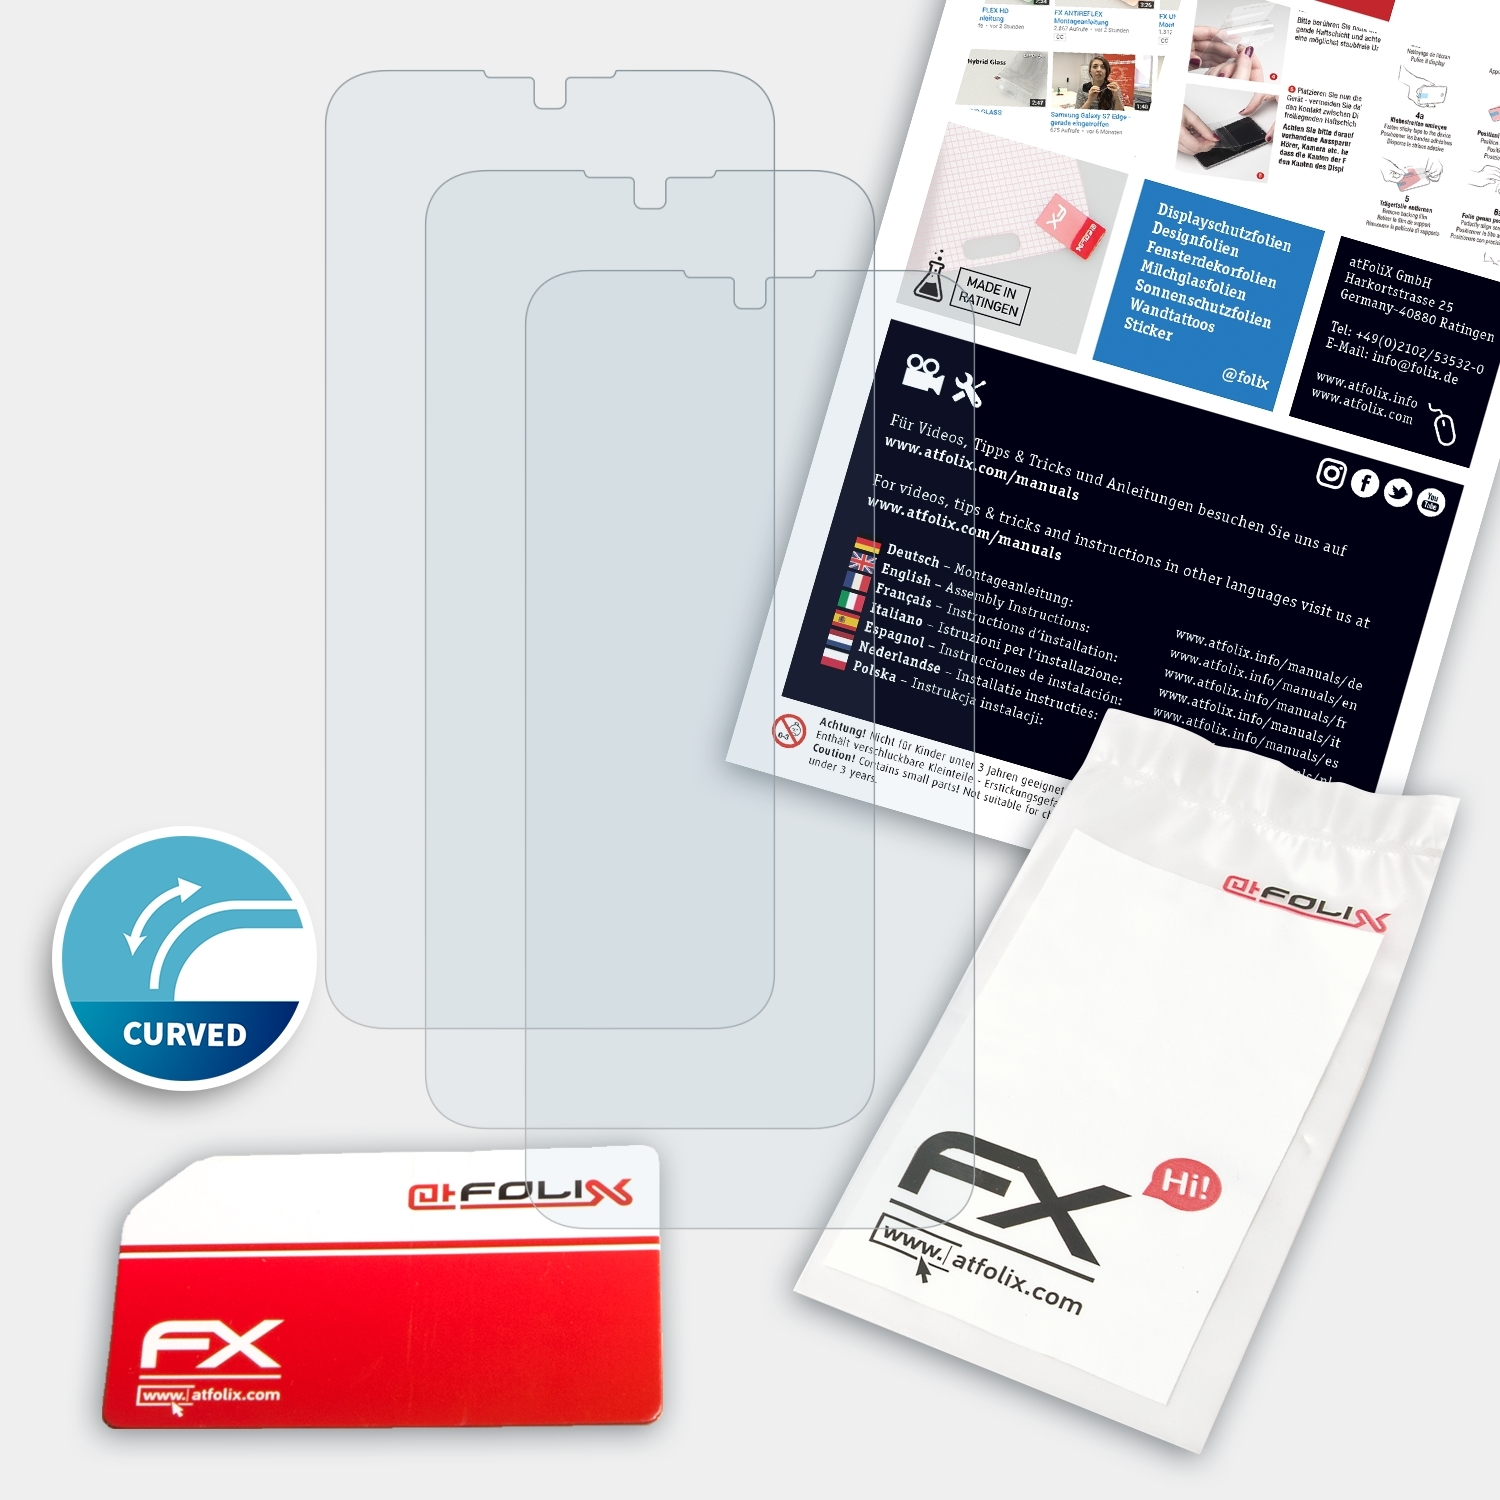 Prime) 10 FX-ActiFleX Displayschutz(für Blade ZTE ATFOLIX 3x